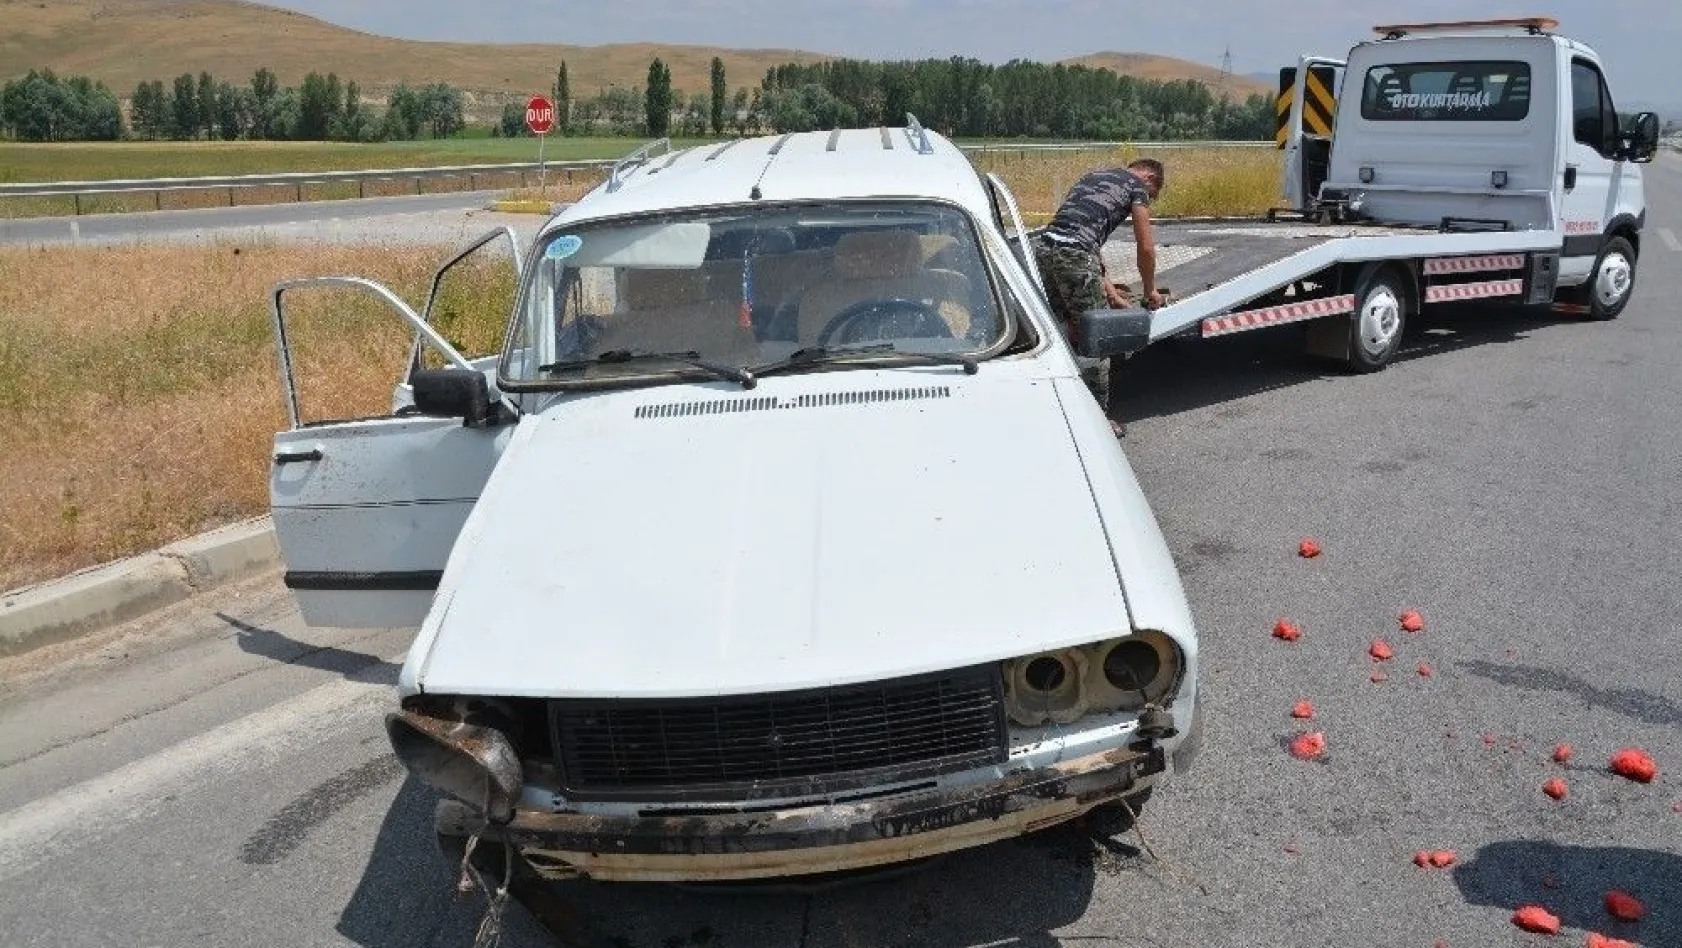 Sivas'ta trafik kazası: 6 yaralı